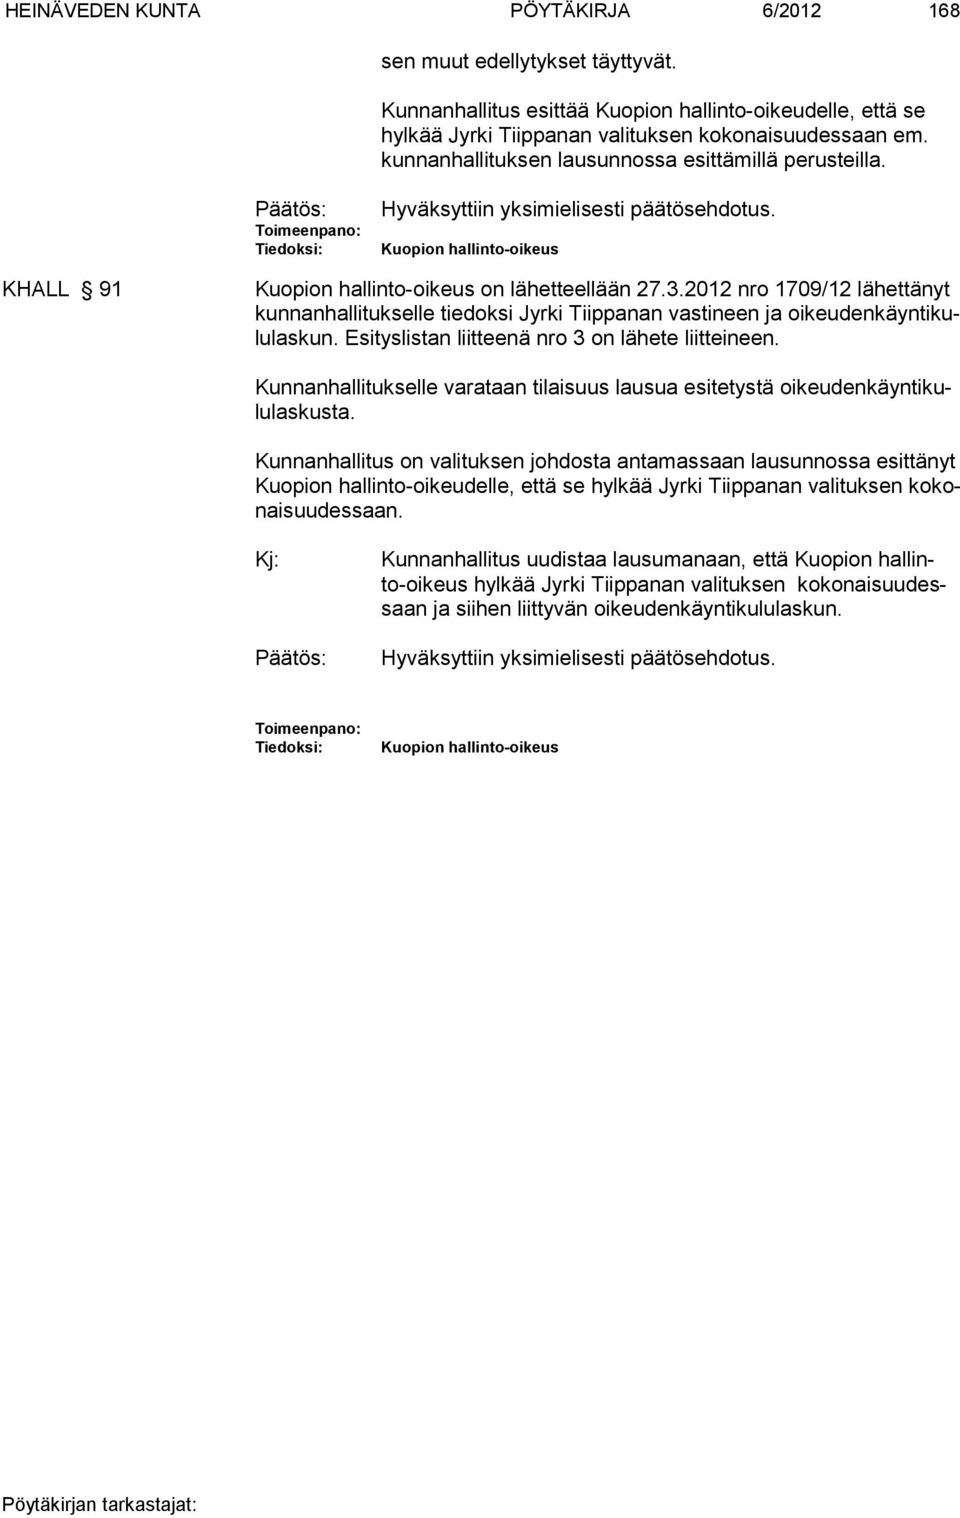 3.2012 nro 1709/12 lähettänyt kunnanhallitukselle tiedoksi Jyrki Tiippanan vastineen ja oikeudenkäyntikululaskun. Esityslistan liitteenä nro 3 on lähete liitteineen.